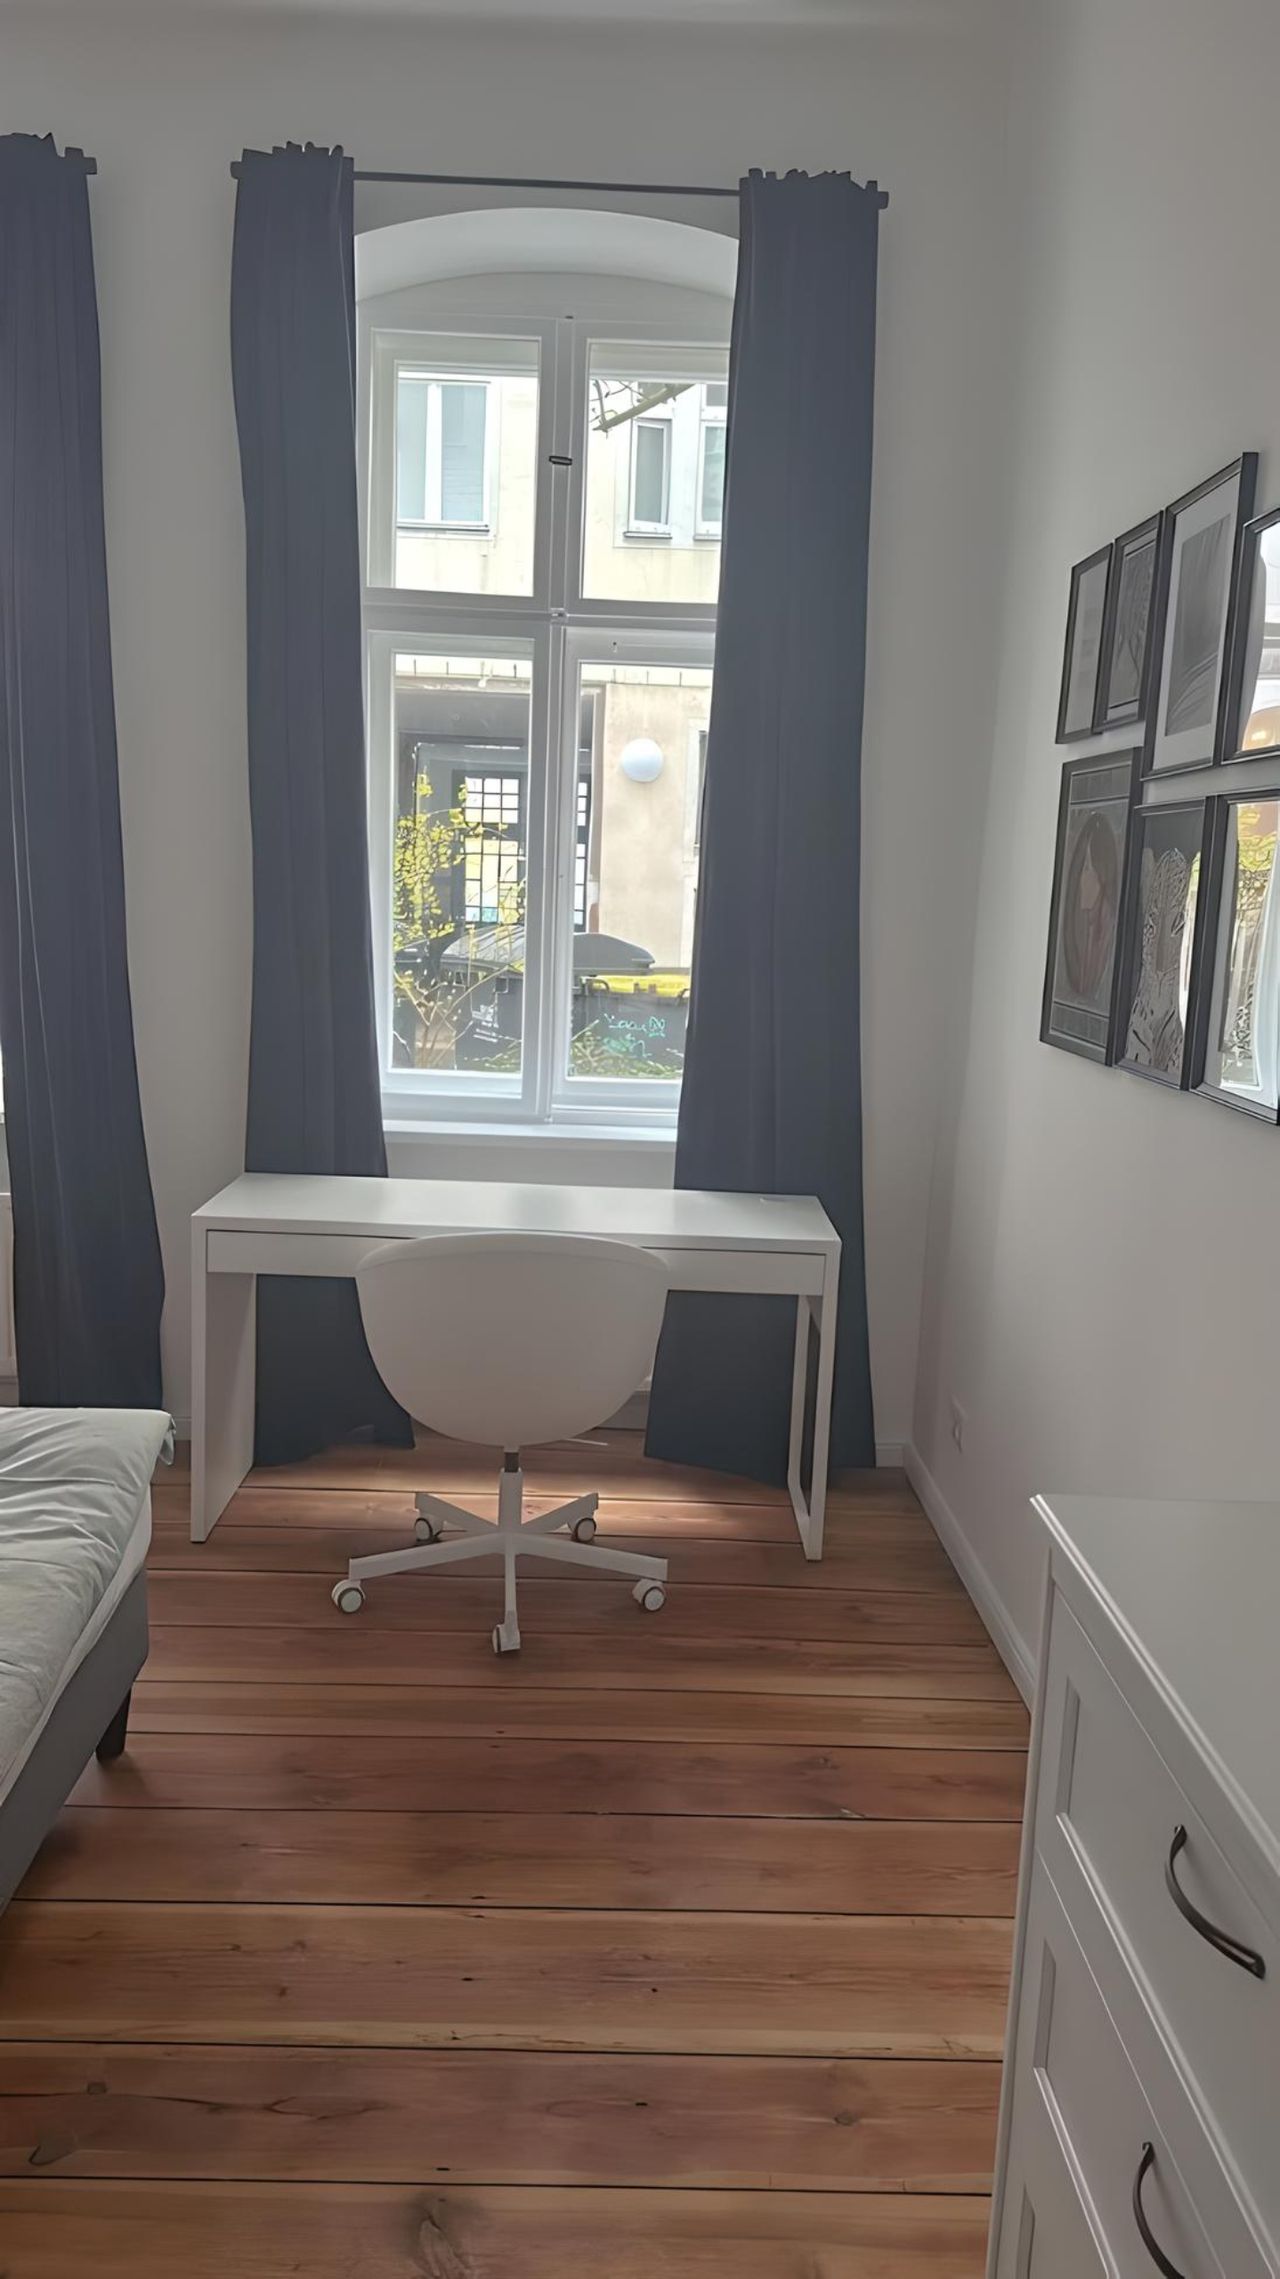 Luxury 3 bedroom apartment in Berlin Kreuzberg